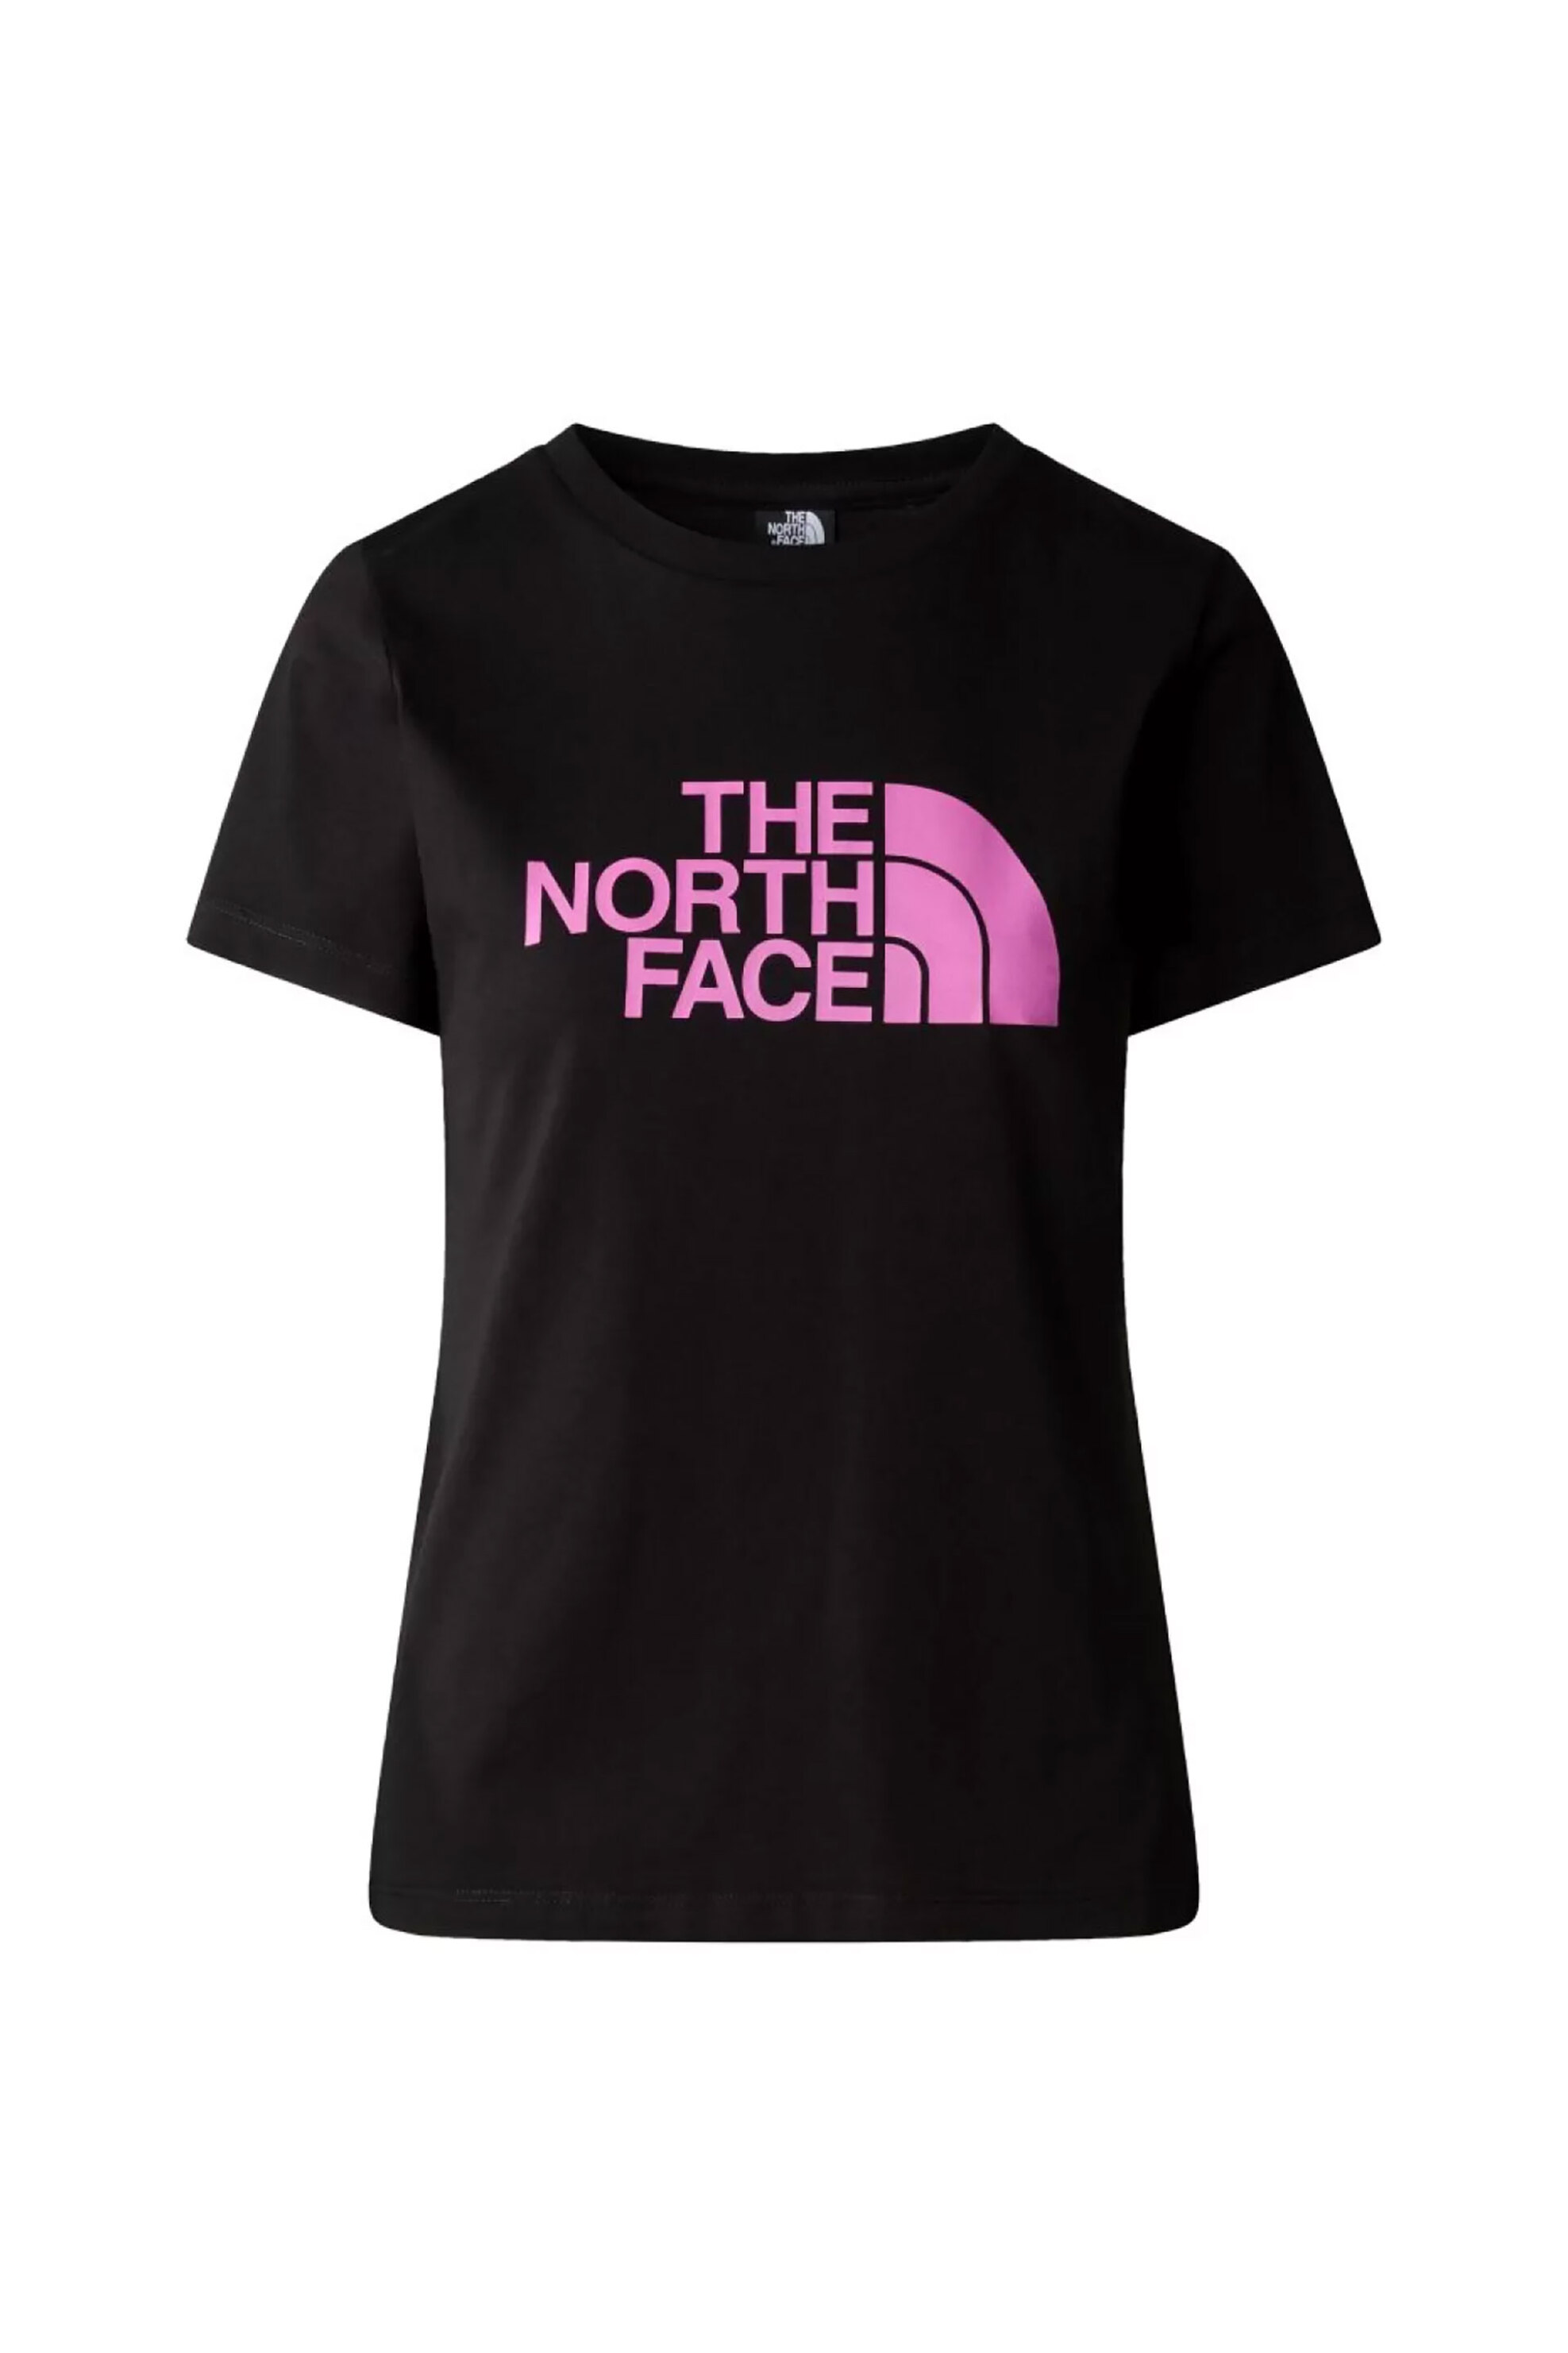 Γυναικεία Ρούχα & Αξεσουάρ > Γυναικεία Ρούχα > Γυναικεία Τοπ > Γυναικεία T-Shirts The North Face γυναικείο T-shirt βαμβακερό μονόχρωμο με contrast logo prints "Easy" - NF0A87N6YES1 Μαύρο